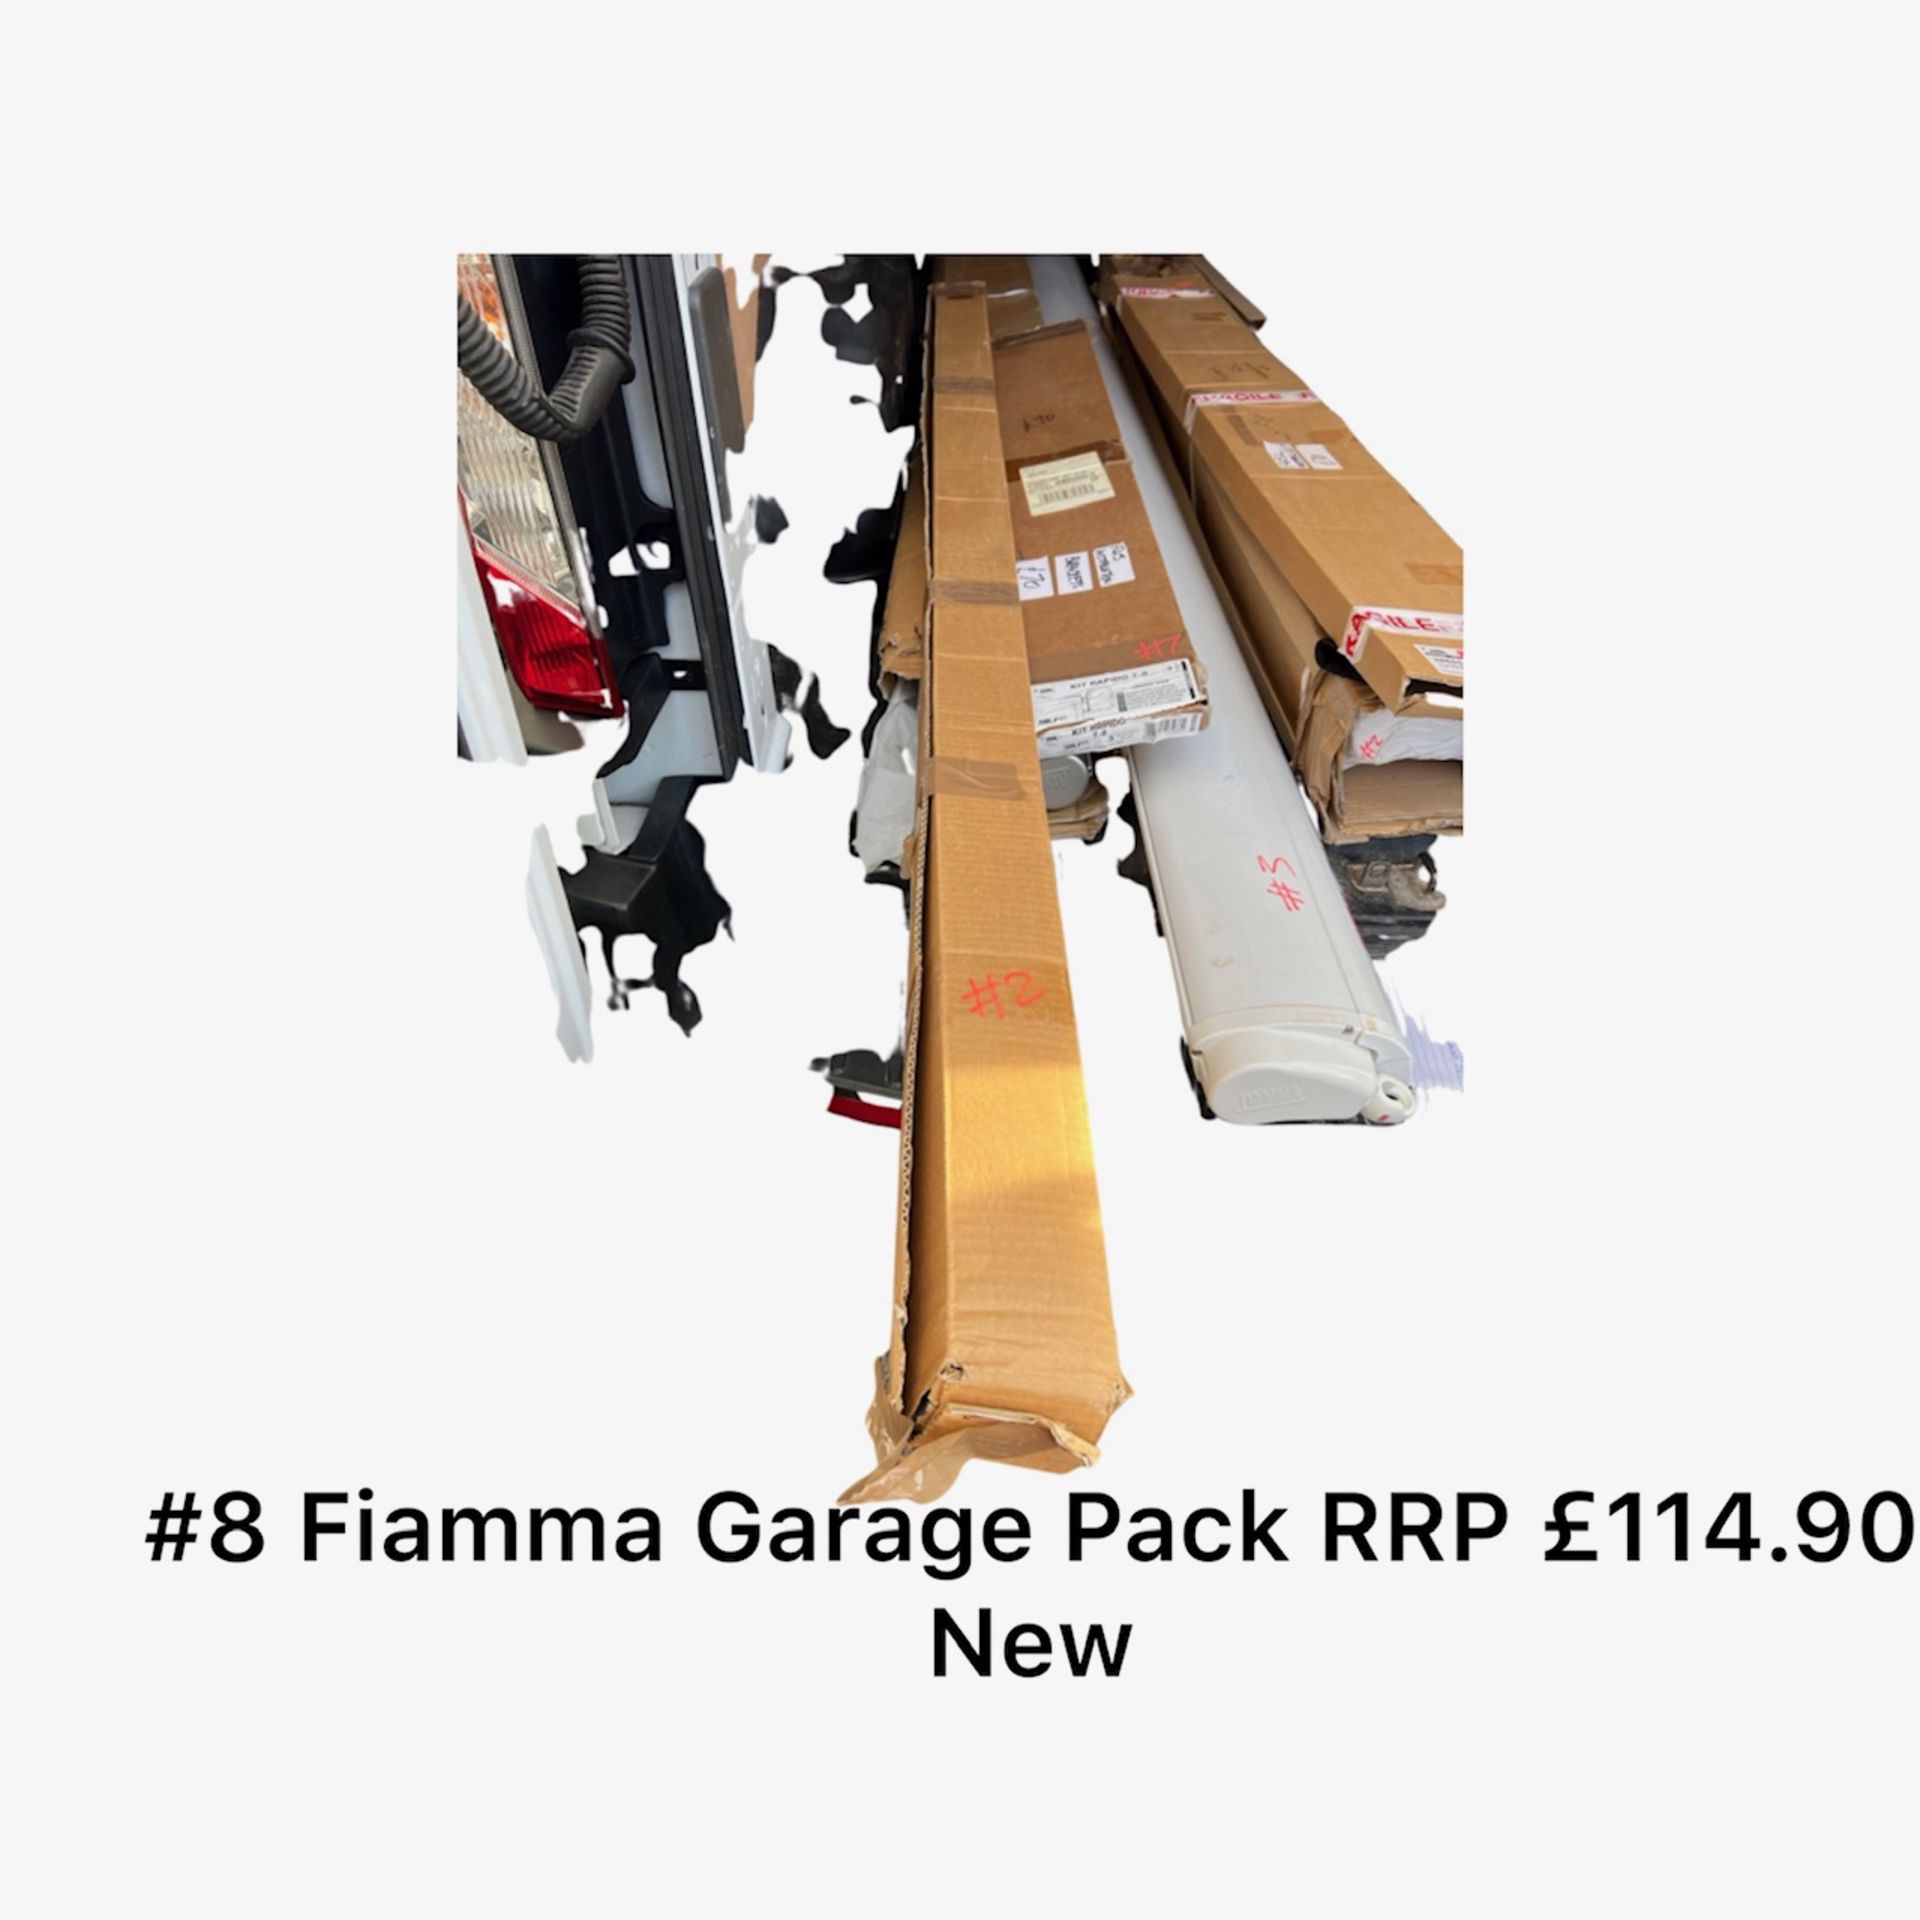 Fiamma Garage Pack Bike Storage RRP £114.90 *NO VAT* - Image 2 of 3